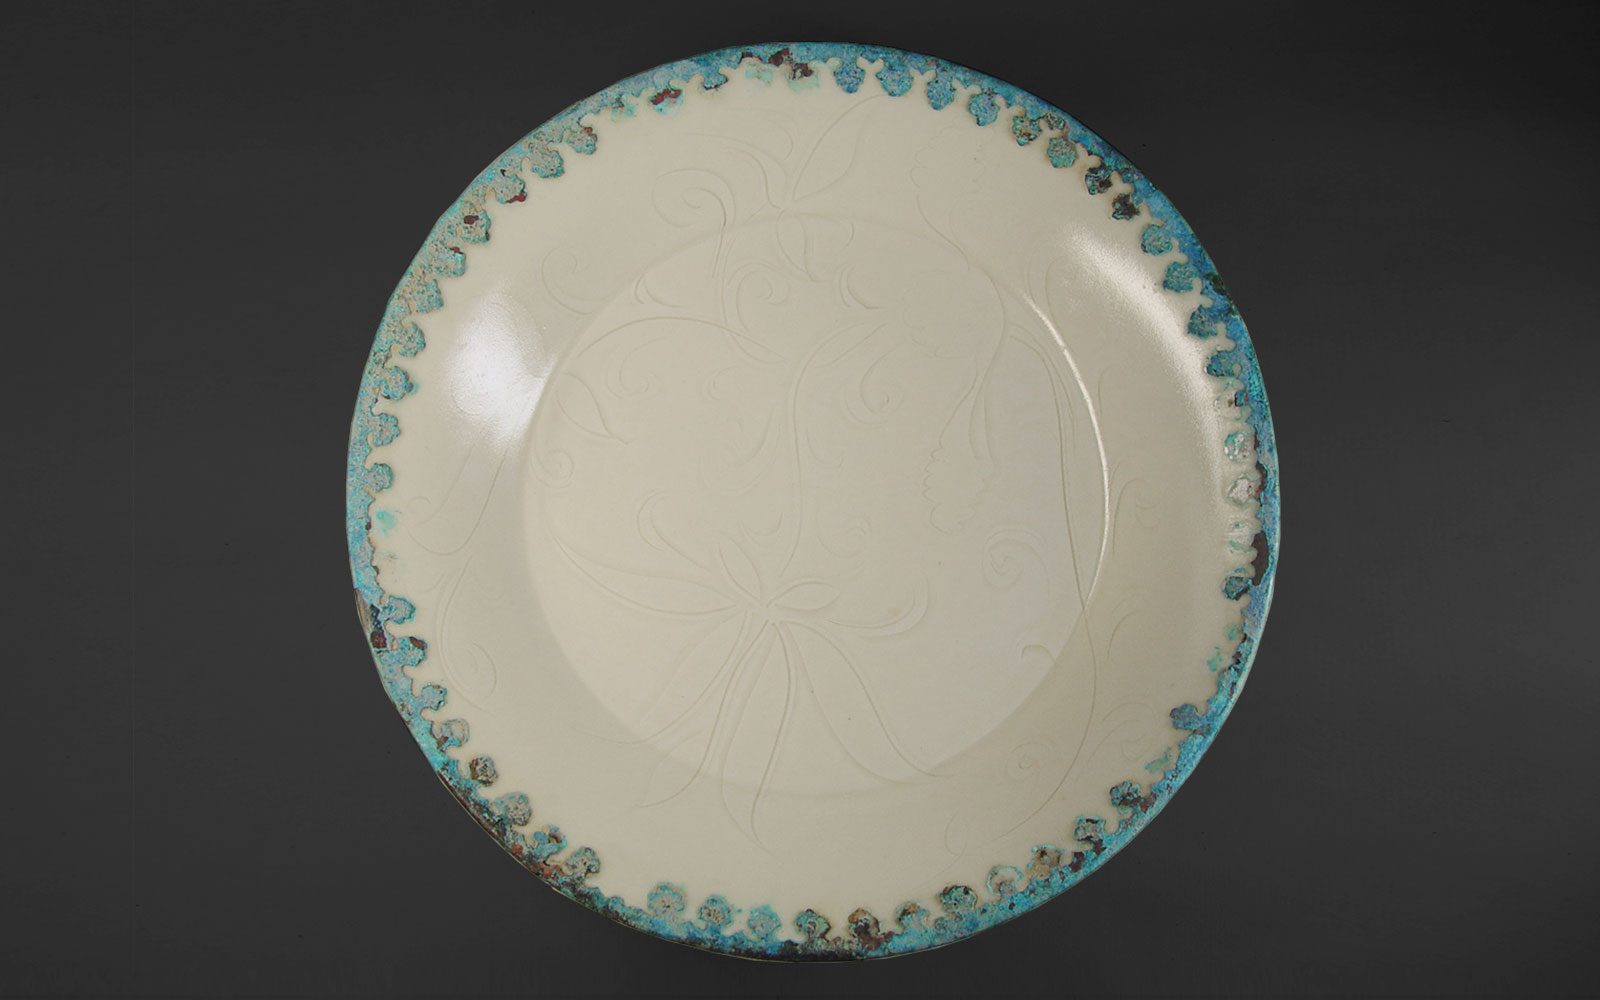 金 定窯白釉包銅邊劃花蓮紋折腰盤 Ding ware dish with incised floral design and a bronze rim, Jin dynasty (1115-1234 CE), d21.1cm